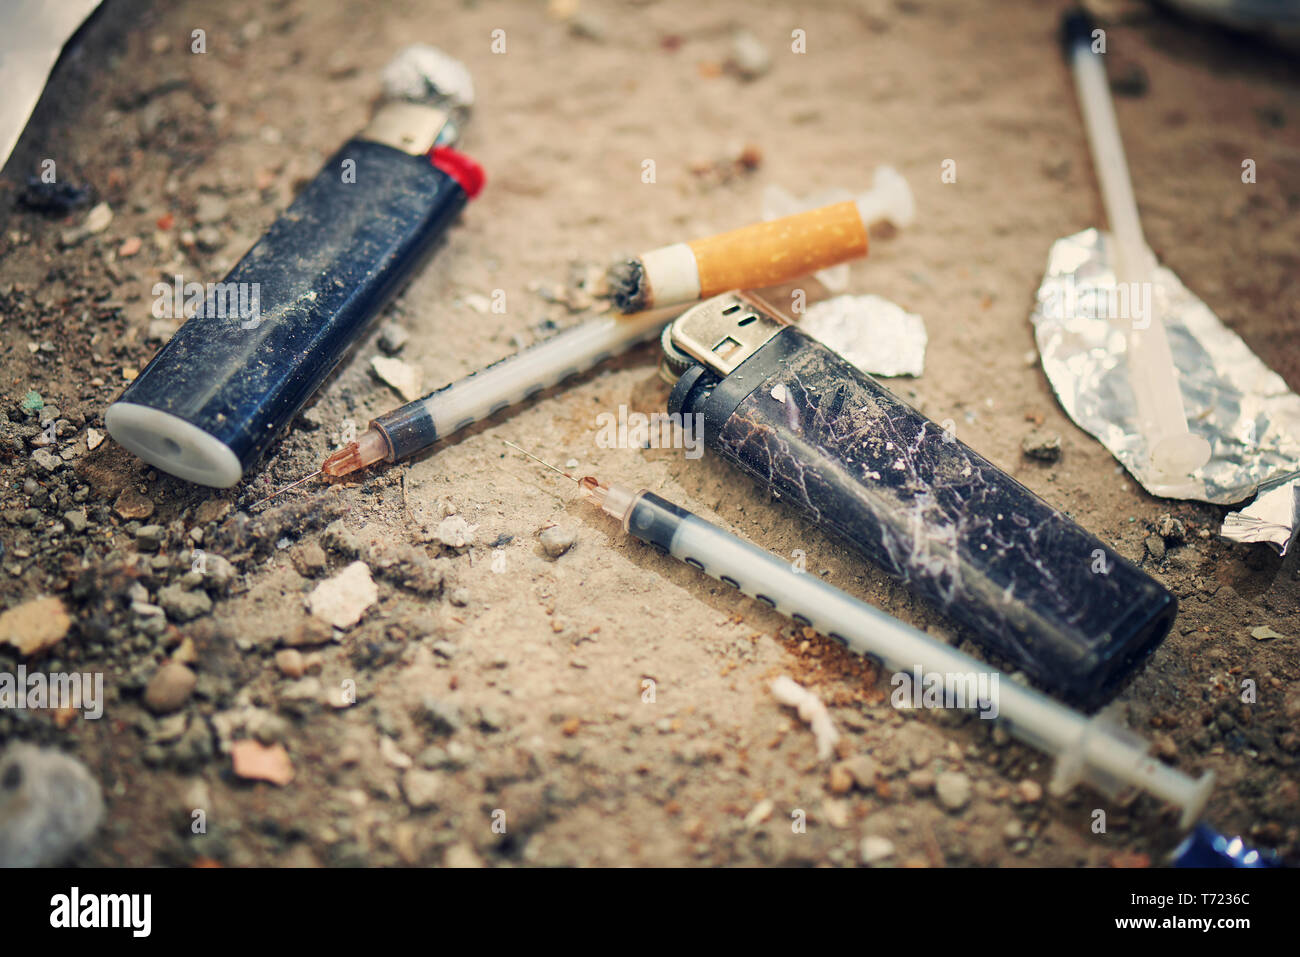 Jeringa usada en la tierra - Las adicciones equipo. La heroína, la jeringa y encendedor de cigarrillos - Concepto de drogadicción Foto de stock